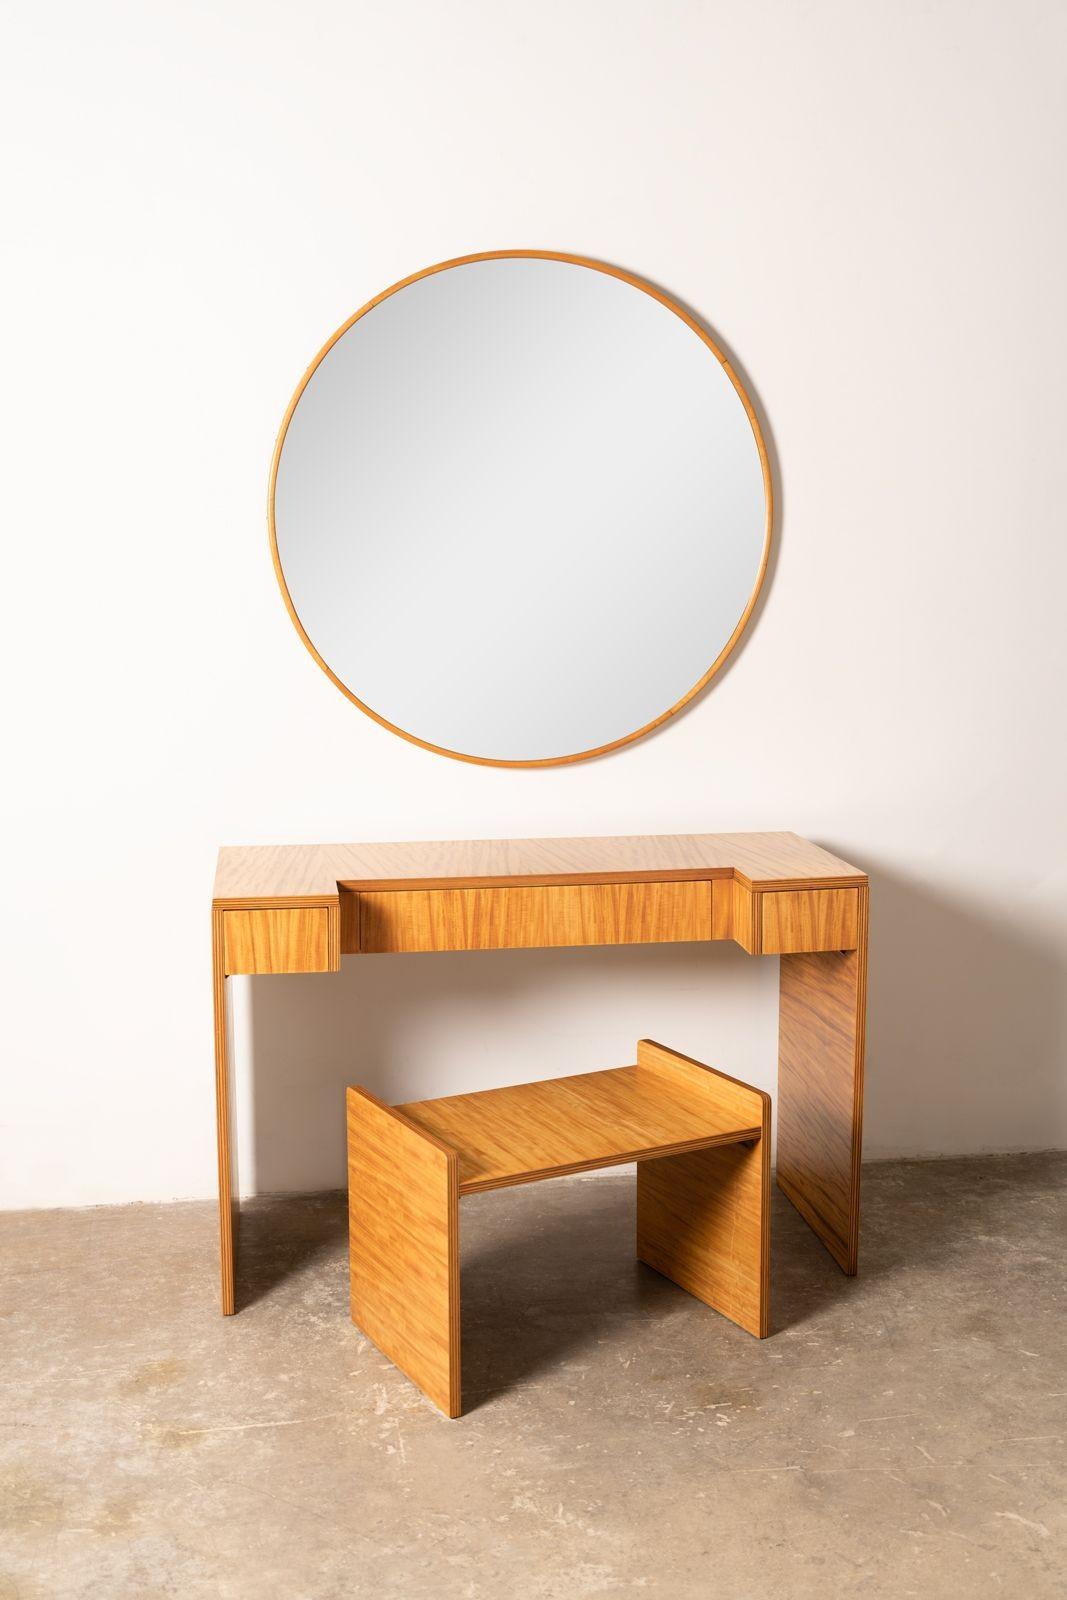 Extraordinaire table de toilette avec miroir et tabouret en bois d'Avodire à ruban très figuré. Créé par la Holland Furniture Company dans les années 1940. À cette époque, Donald Deskey conçoit des meubles pour la société Baker, qui vient de